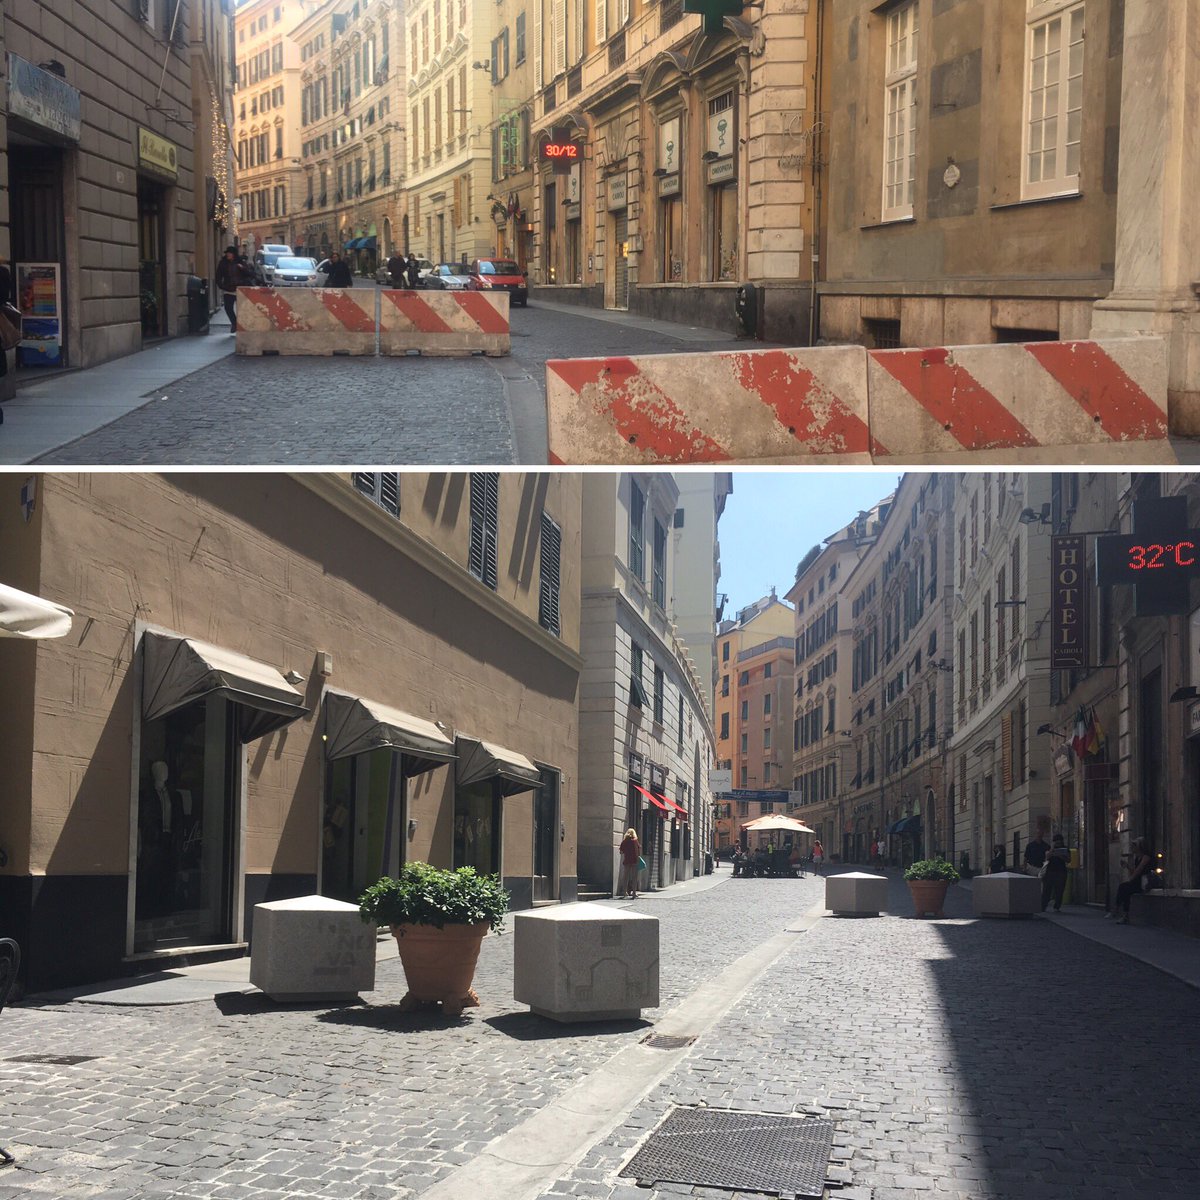 Prima e dopo: un nuovo volto anche in via Cairoli. Grazie #SindacoBucci per rendere #GenovaMeravigliosa ai turisti che arrivano a Genova